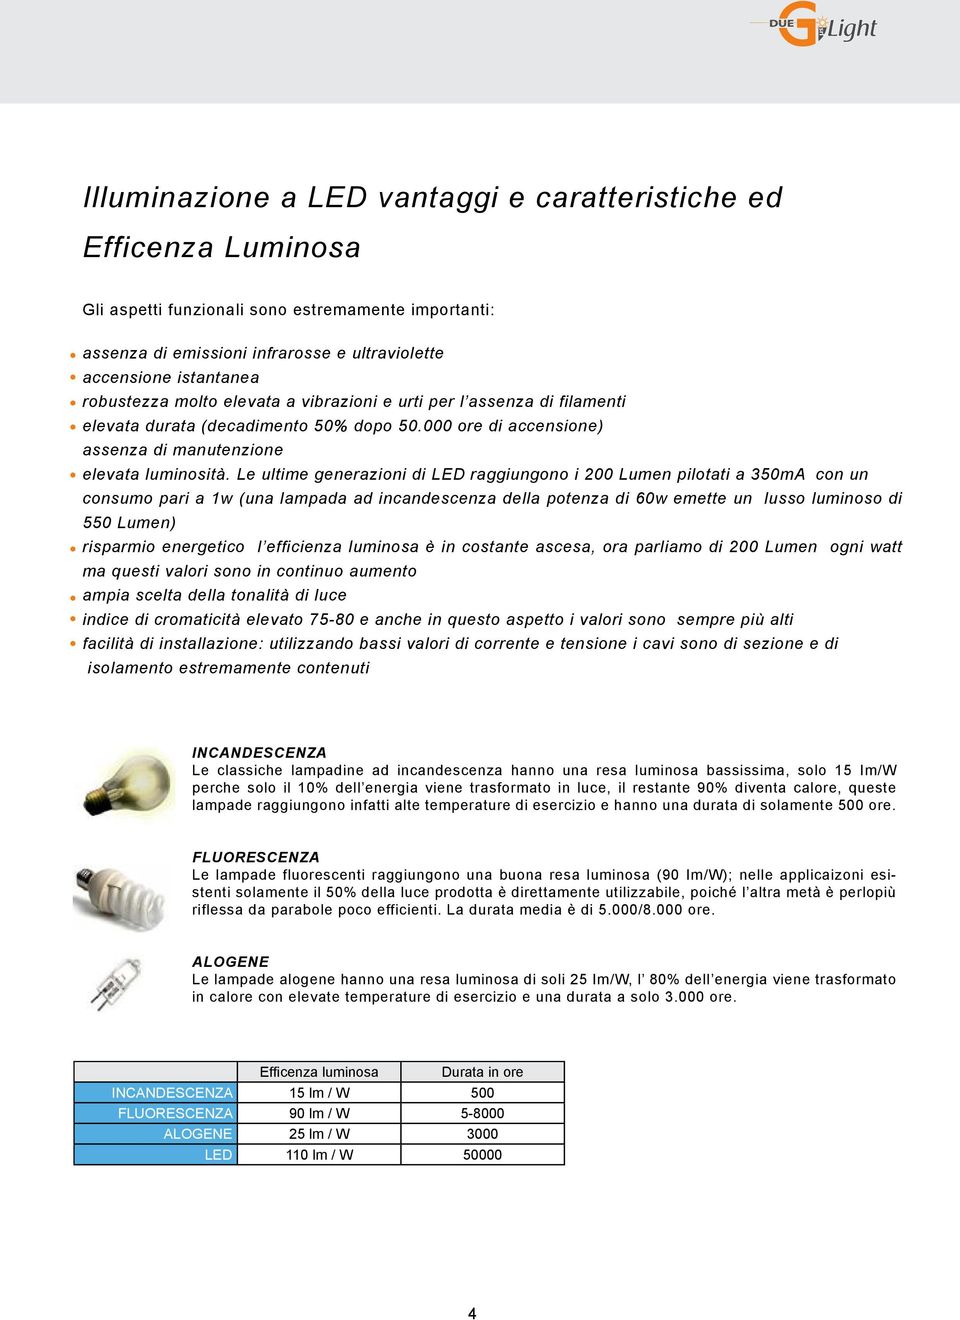 Le ultime generazioni di LED raggiungono i 200 Lumen pilotati a 350mA con un consumo pari a 1w (una lampada ad incandescenza della potenza di 60w emette un lusso luminoso di 550 Lumen) risparmio